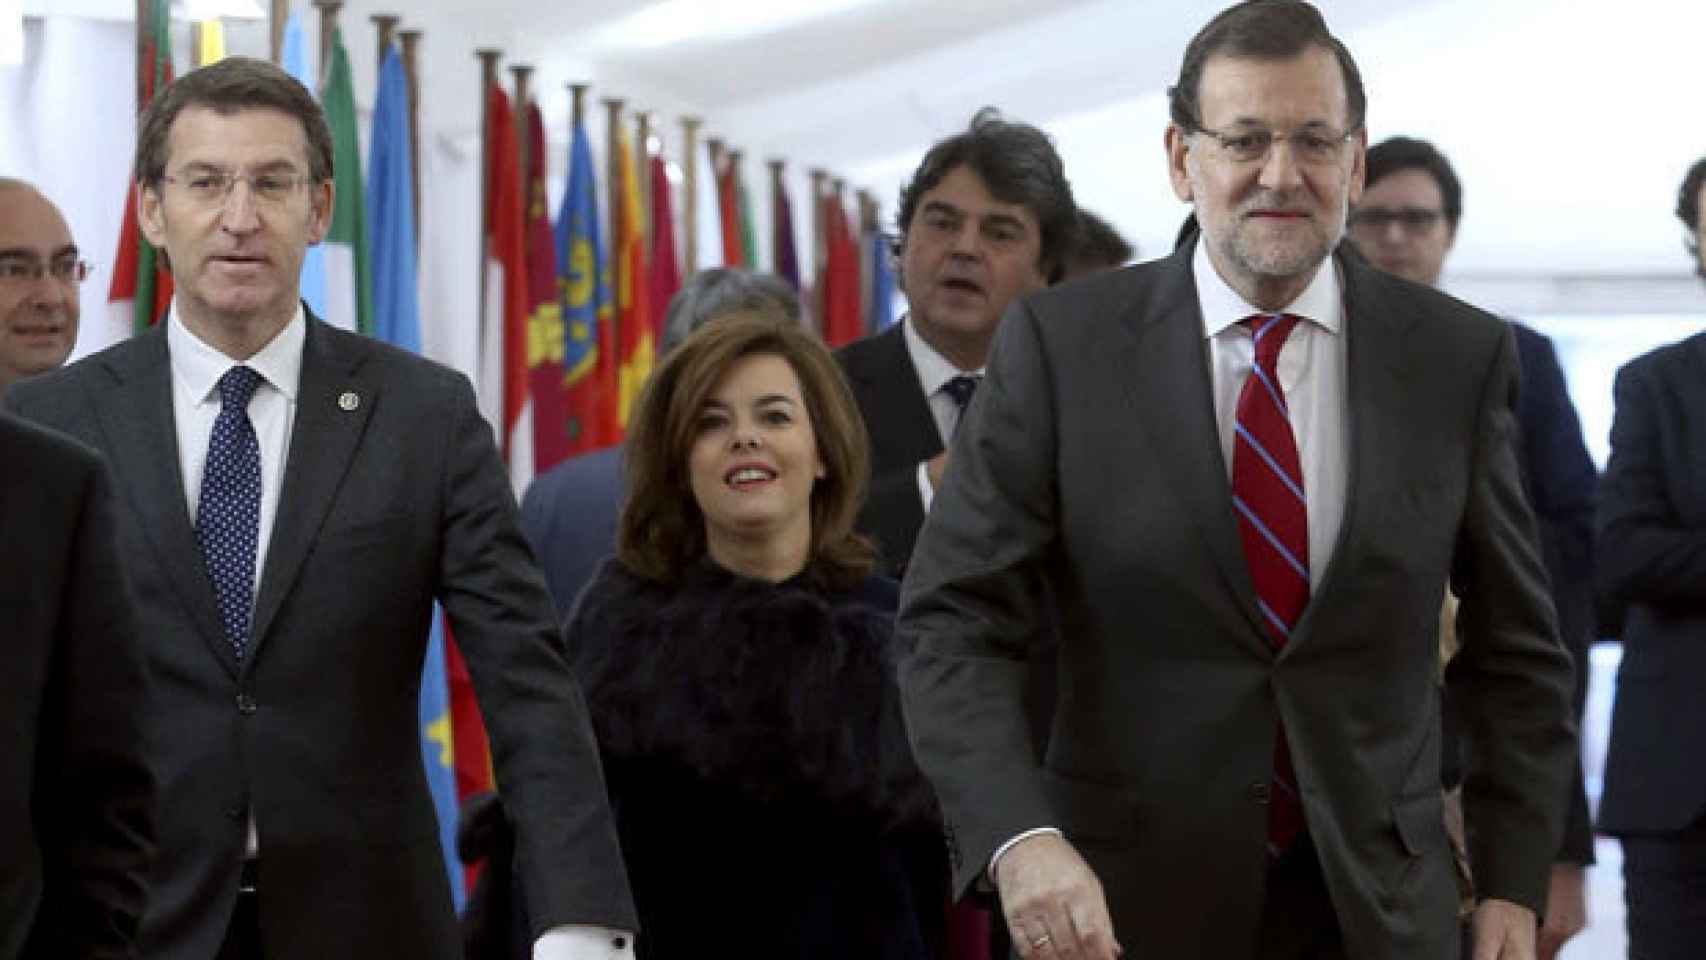 Alberto Núñez Feijóo, Soraya Sáenz de Santamaría y Mariano Rajoy.